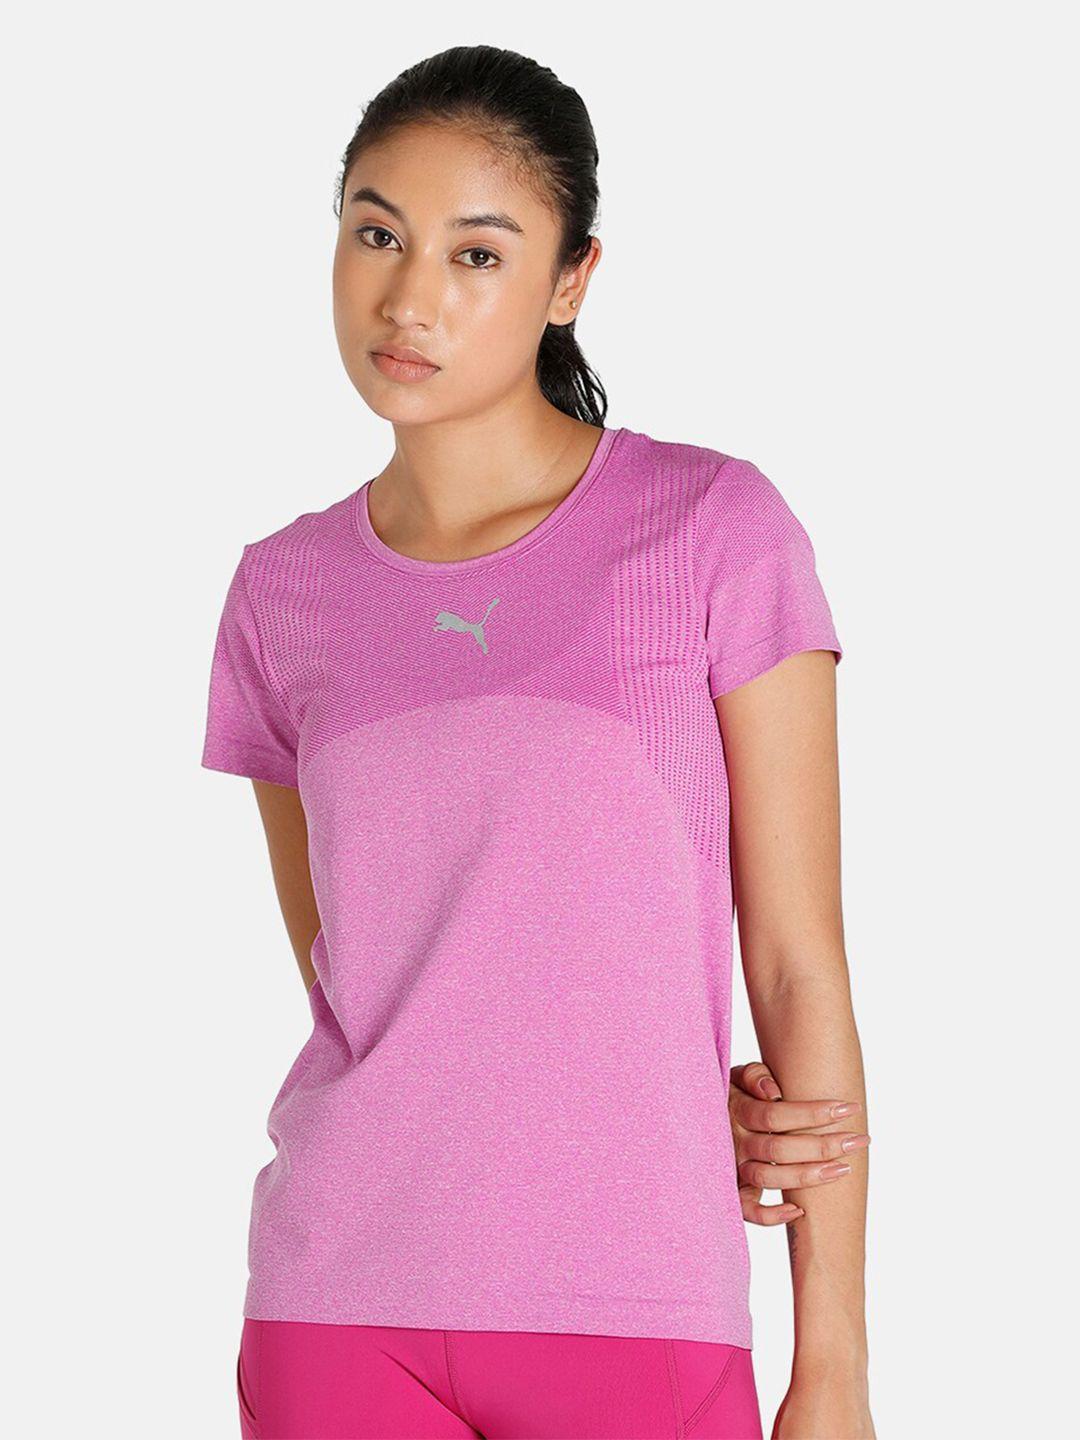 puma-women-pink-evoknit-seamless-slim-fit-t-shirt